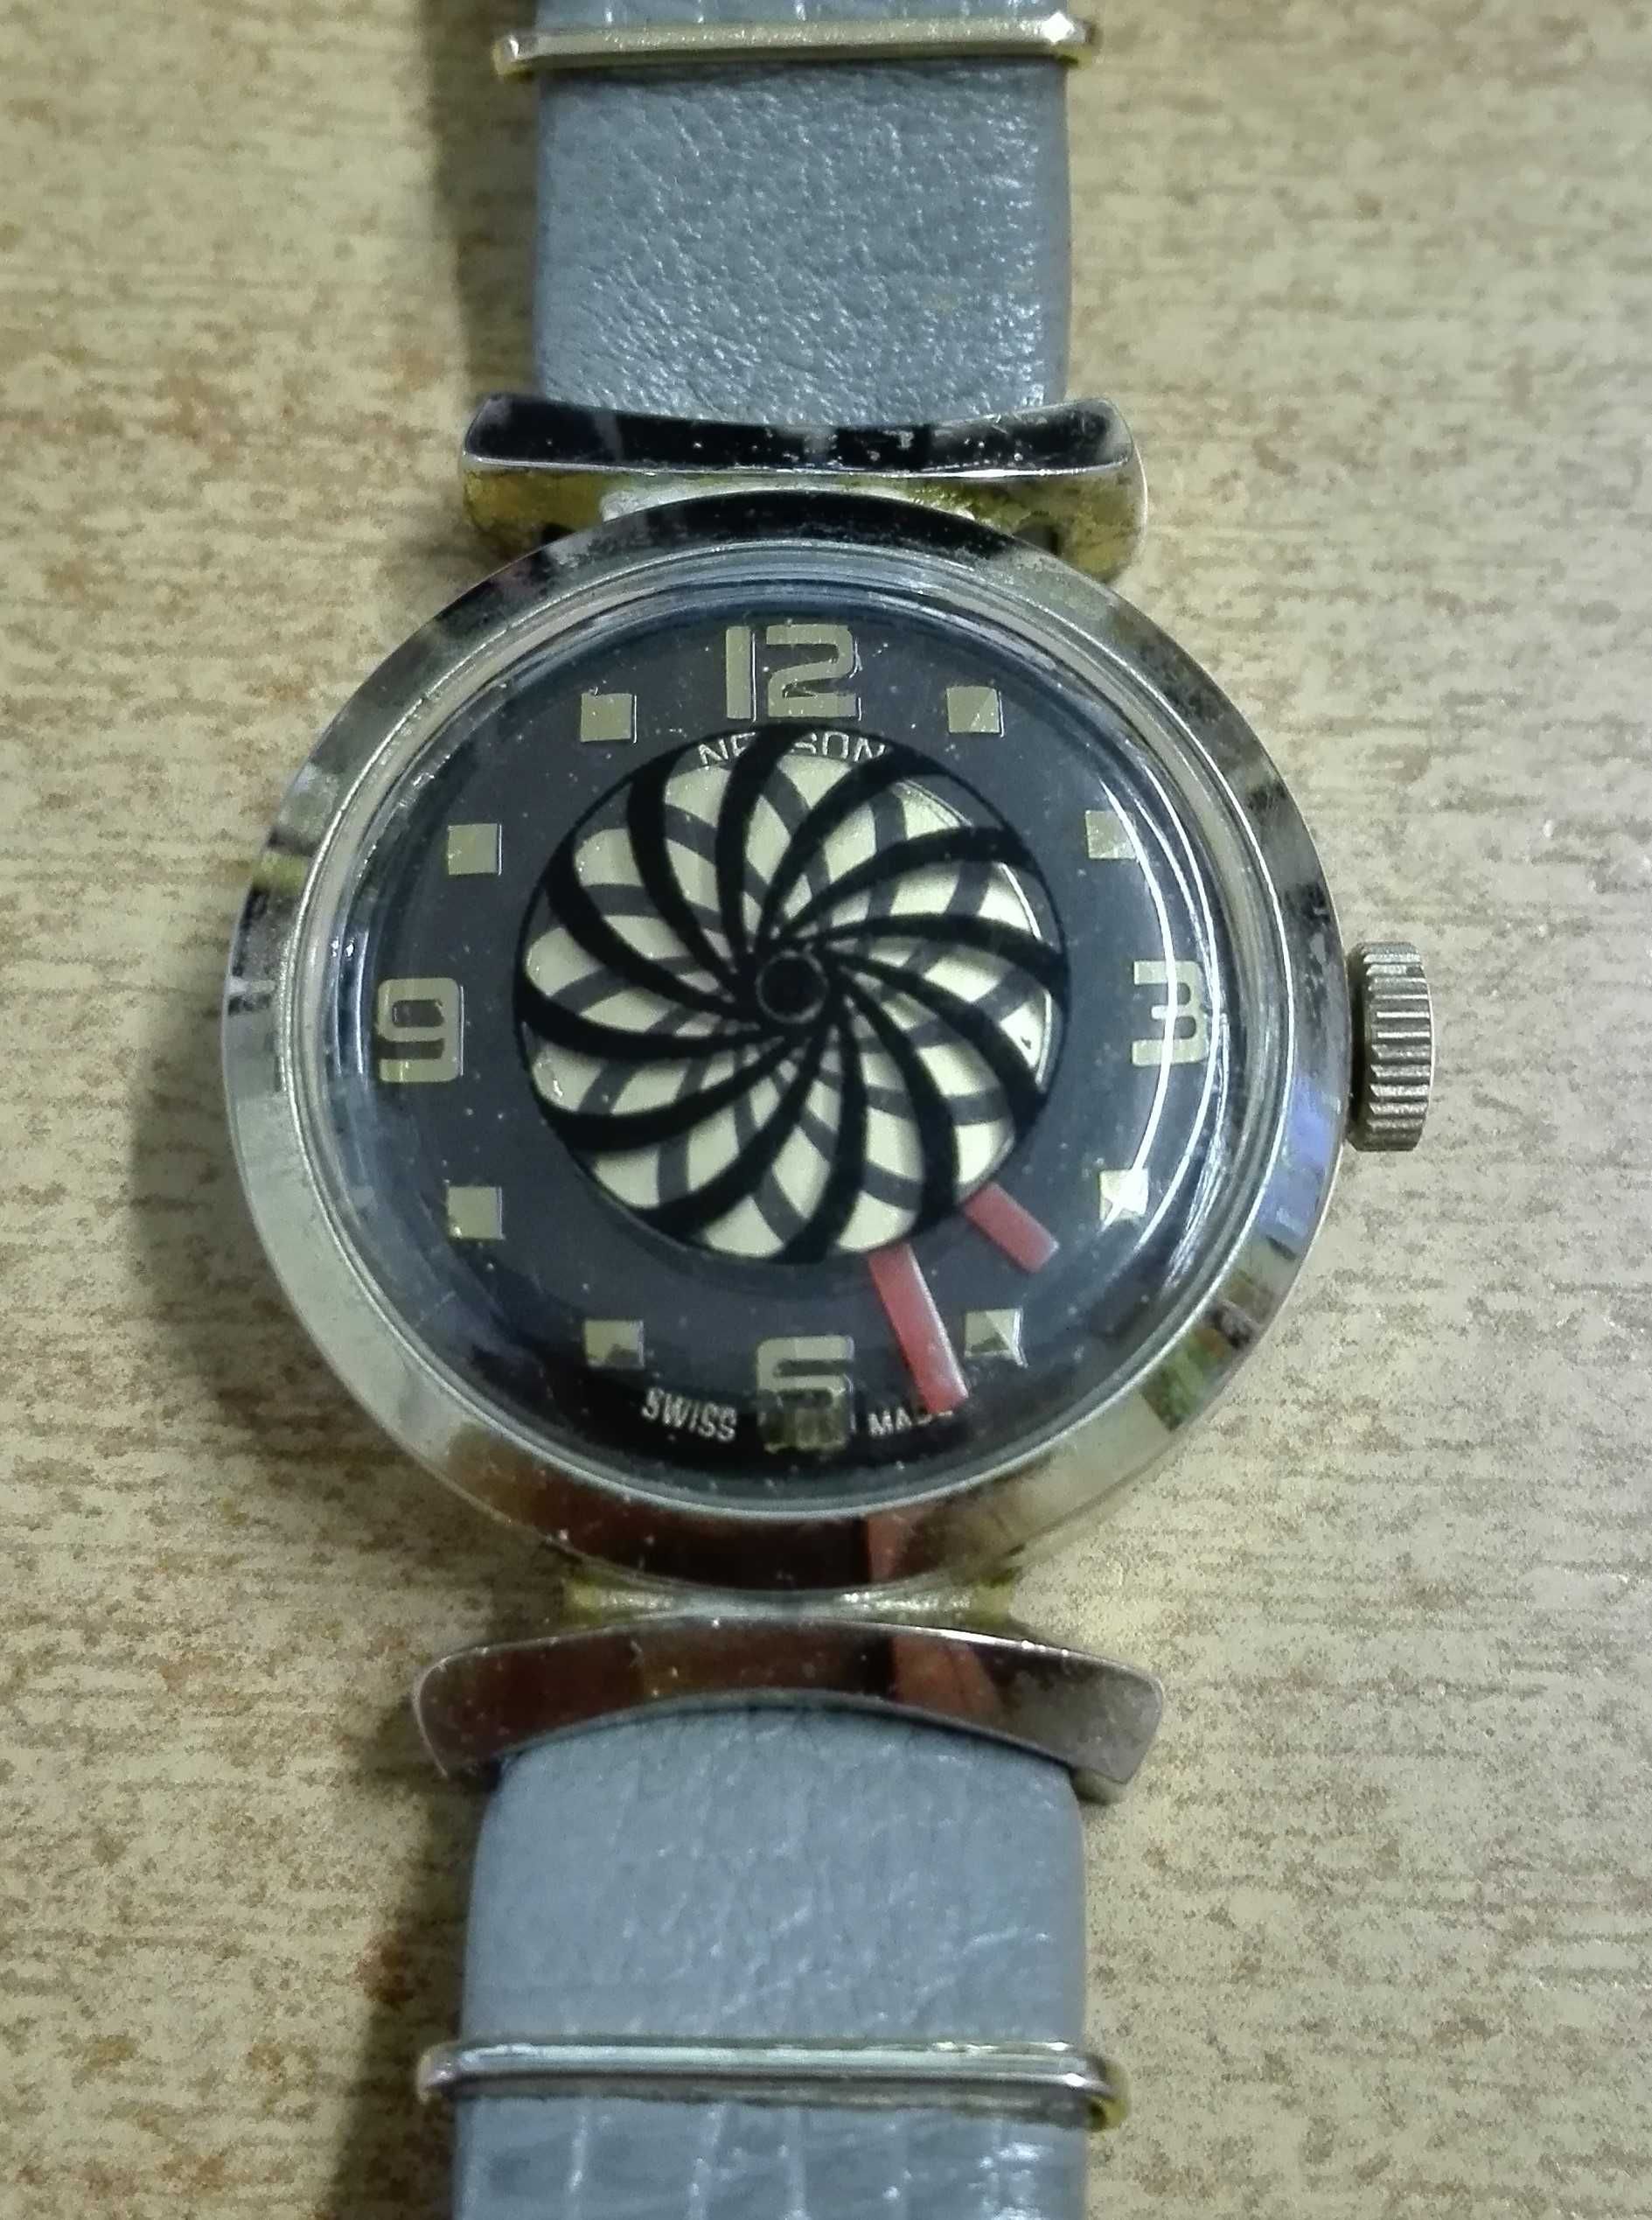 Damski zegarek Nelson - motyw jak kalejdoskop.